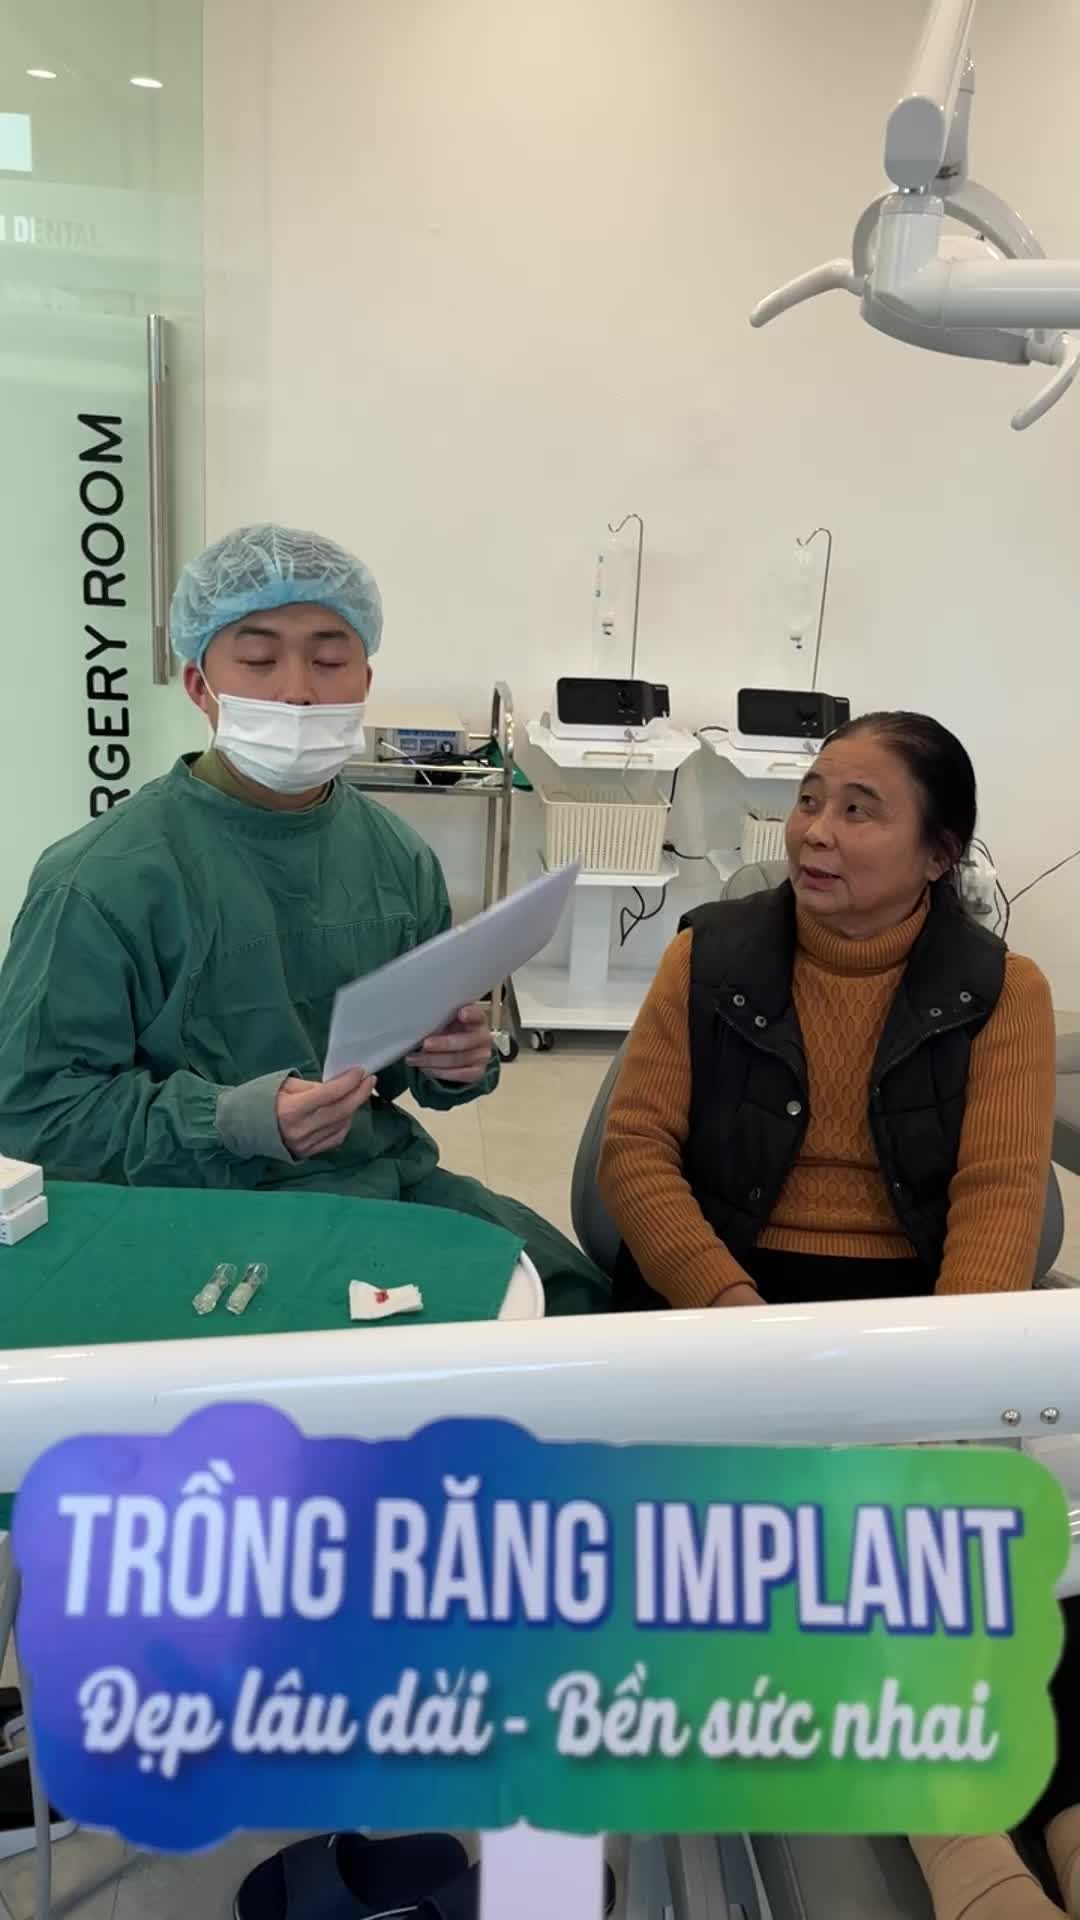 Cấy ghép 2 chân răng implant khôi phục răng số 34 và số 36 cho khách hàng tại Nha khoa Thùy Anh cơ sở Bắc Giang.